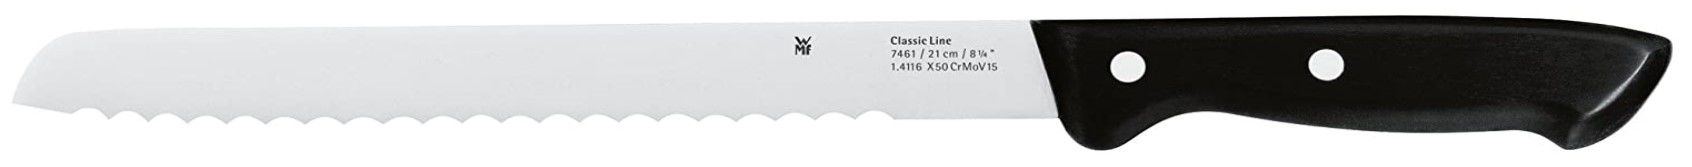 WMF ProfiSelect Brotmesser für 29,99€ (statt 36€)